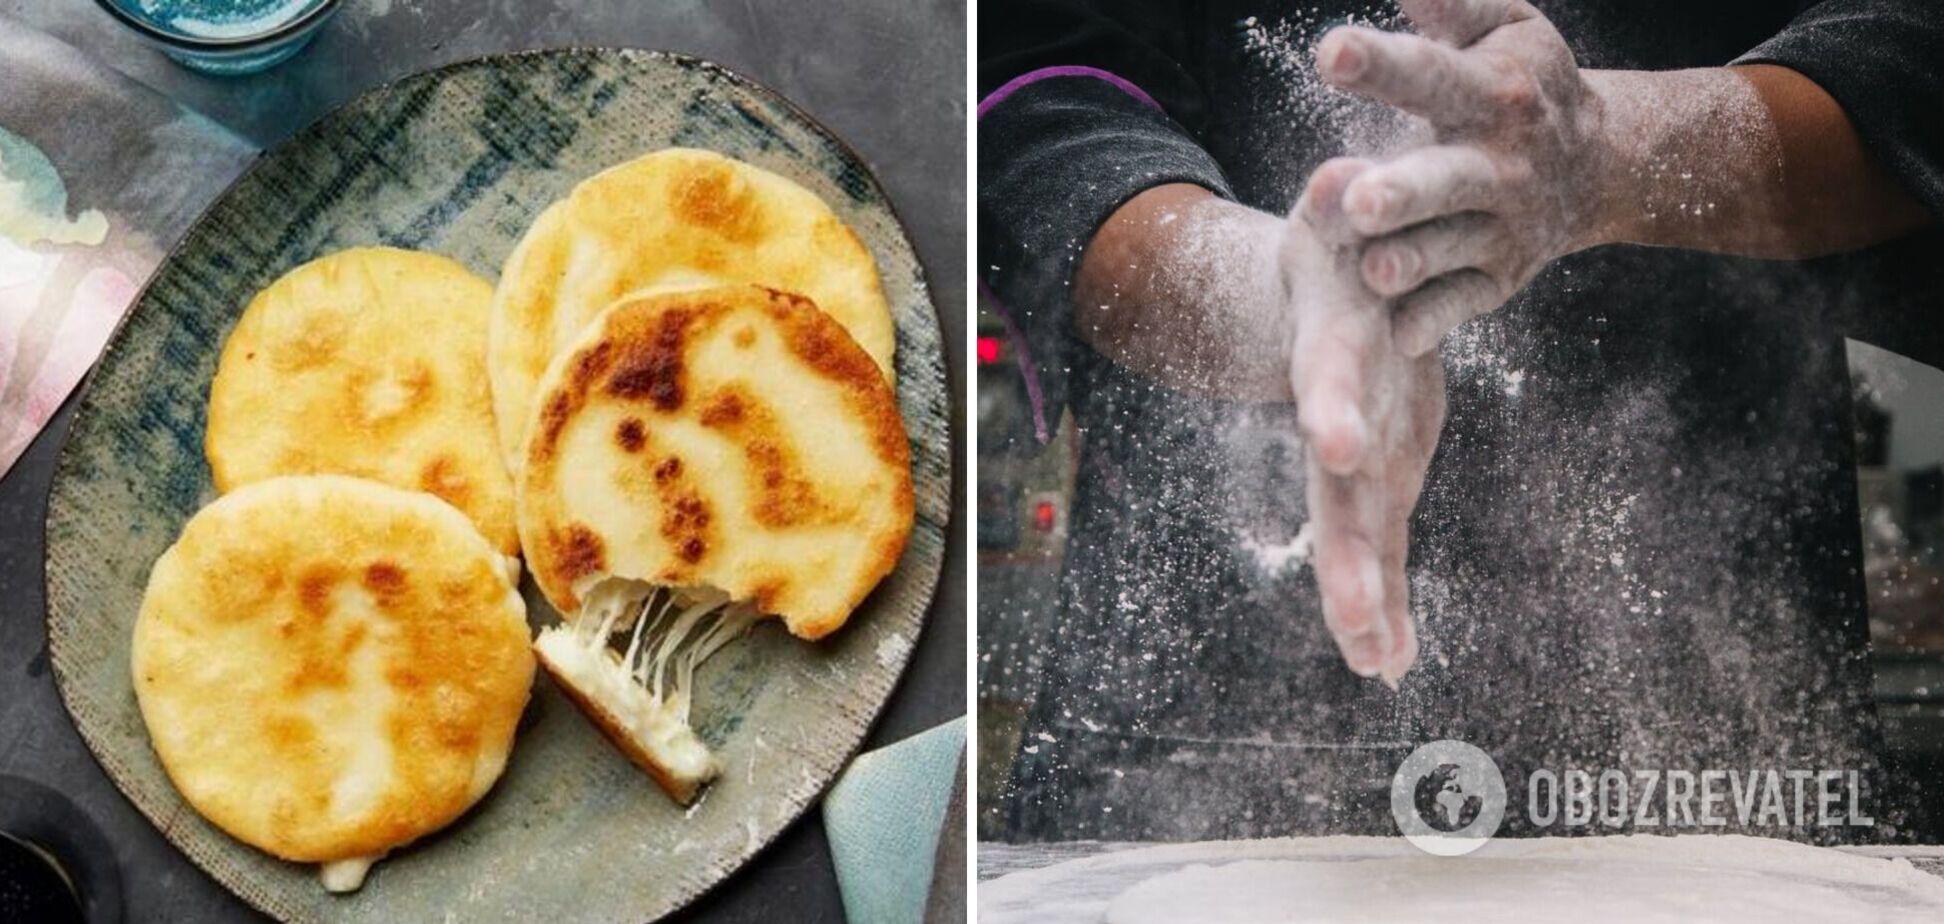 Венесуэльские арепасы: как приготовить необычное и простое блюдо